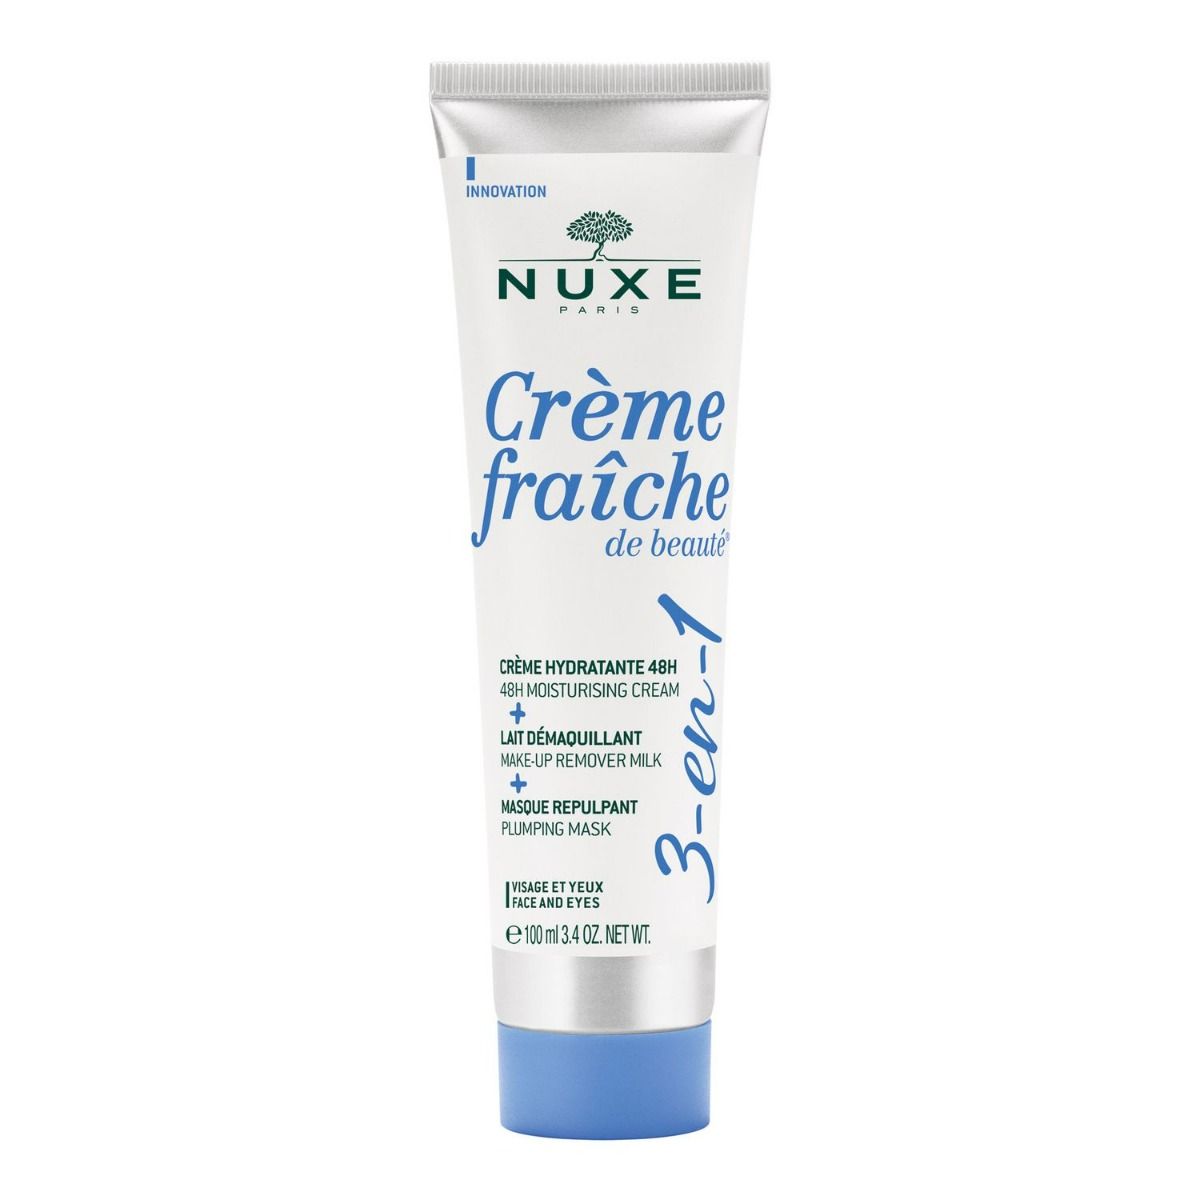 Nuxe Crème Fraîche de Beauté крем для лица, 100 ml цена и фото